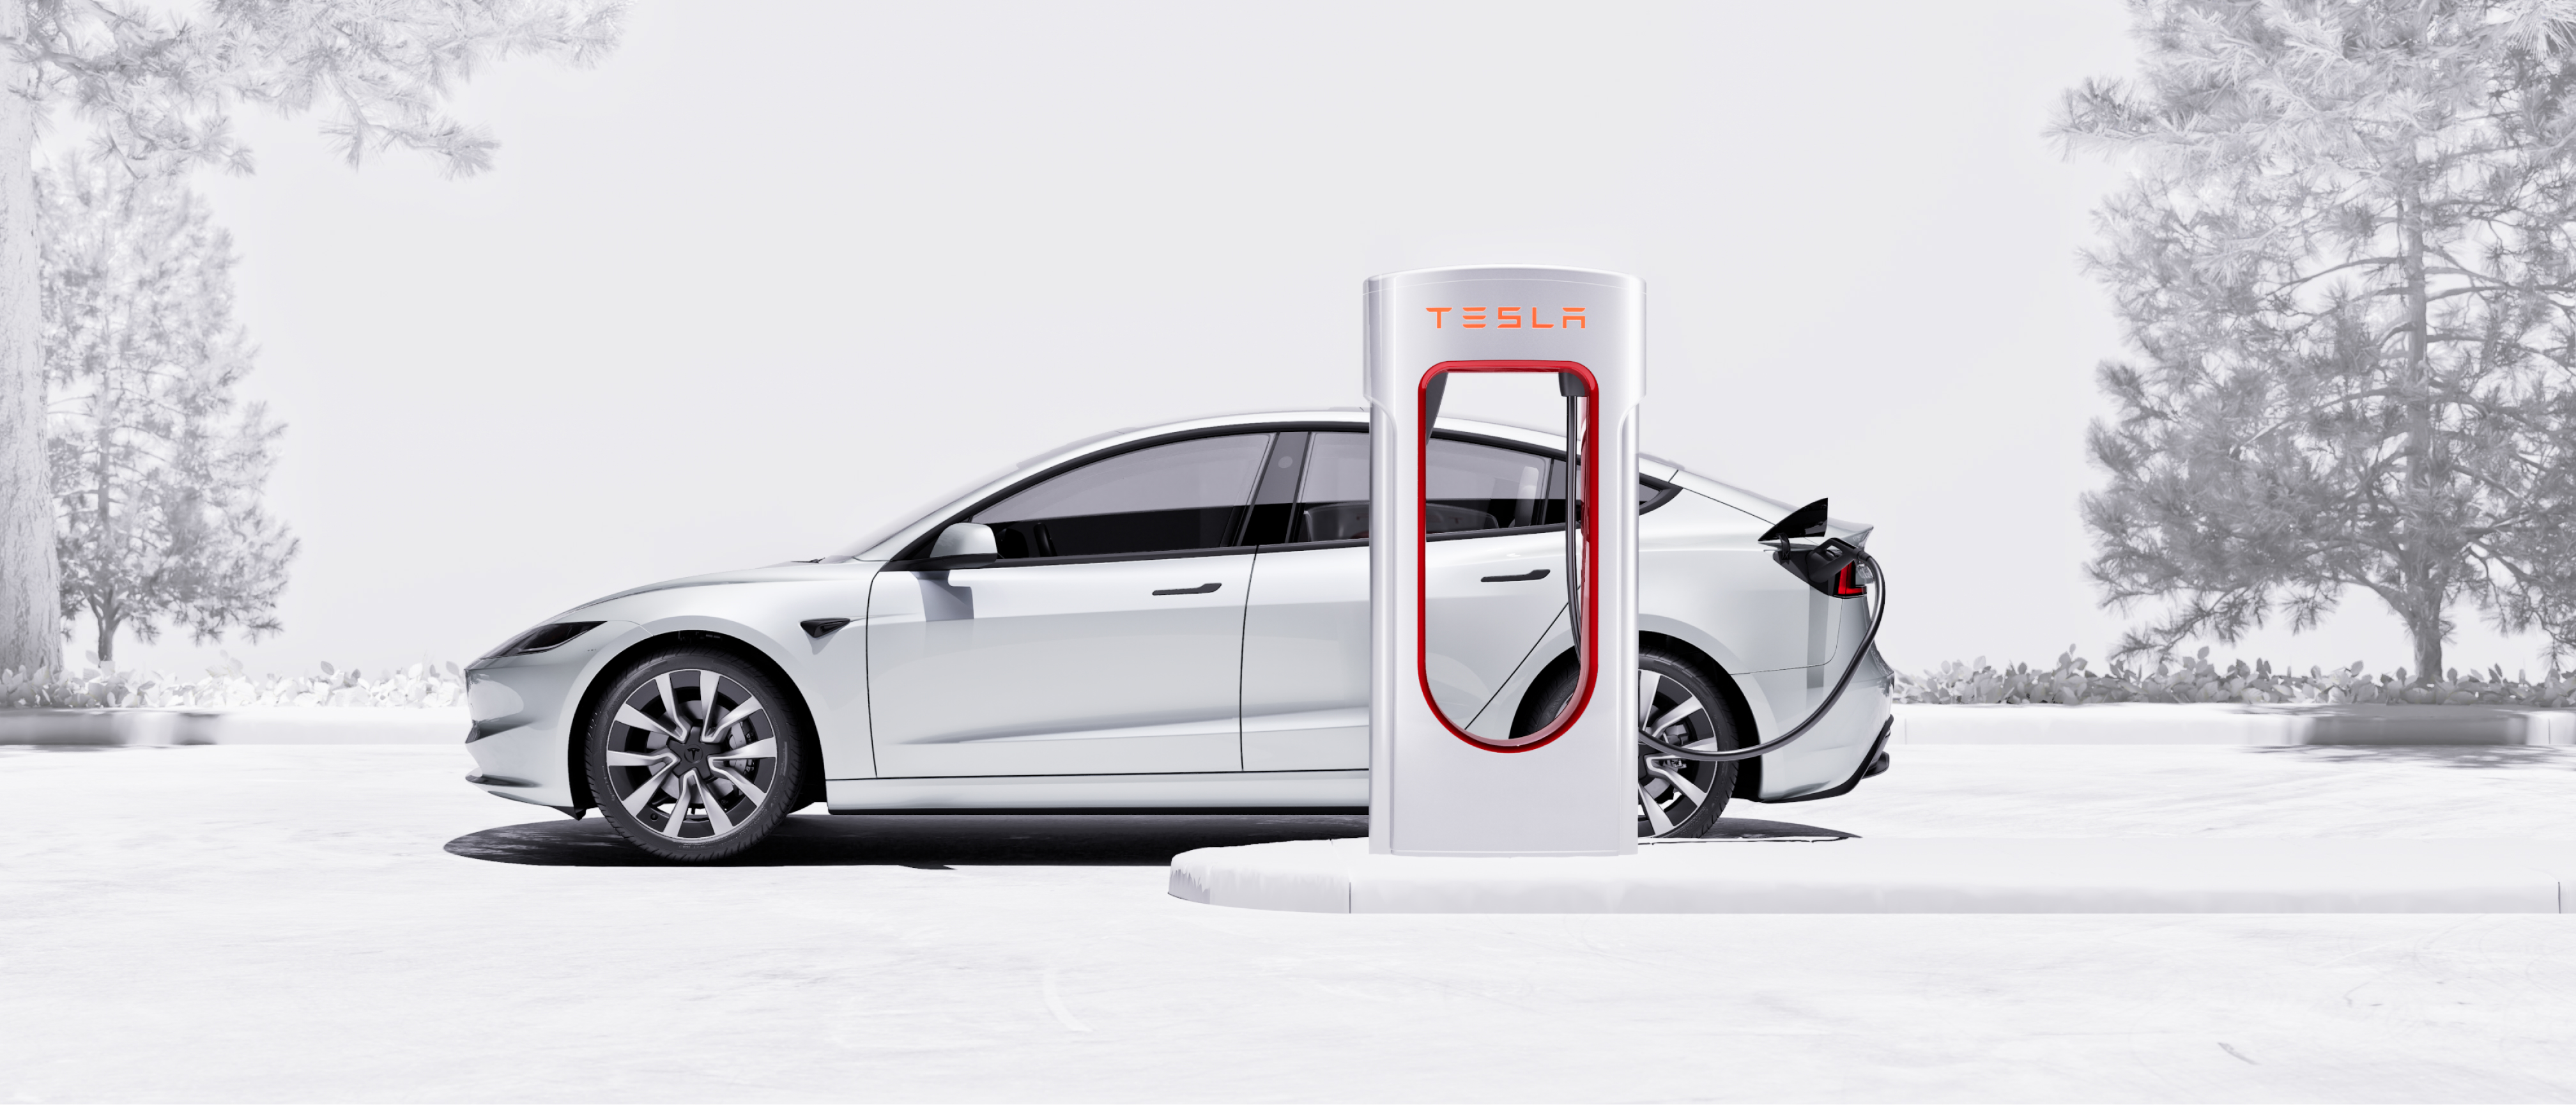 سيارة Model 3 بلون أبيض يتم شحنها باستخدام Supercharger.